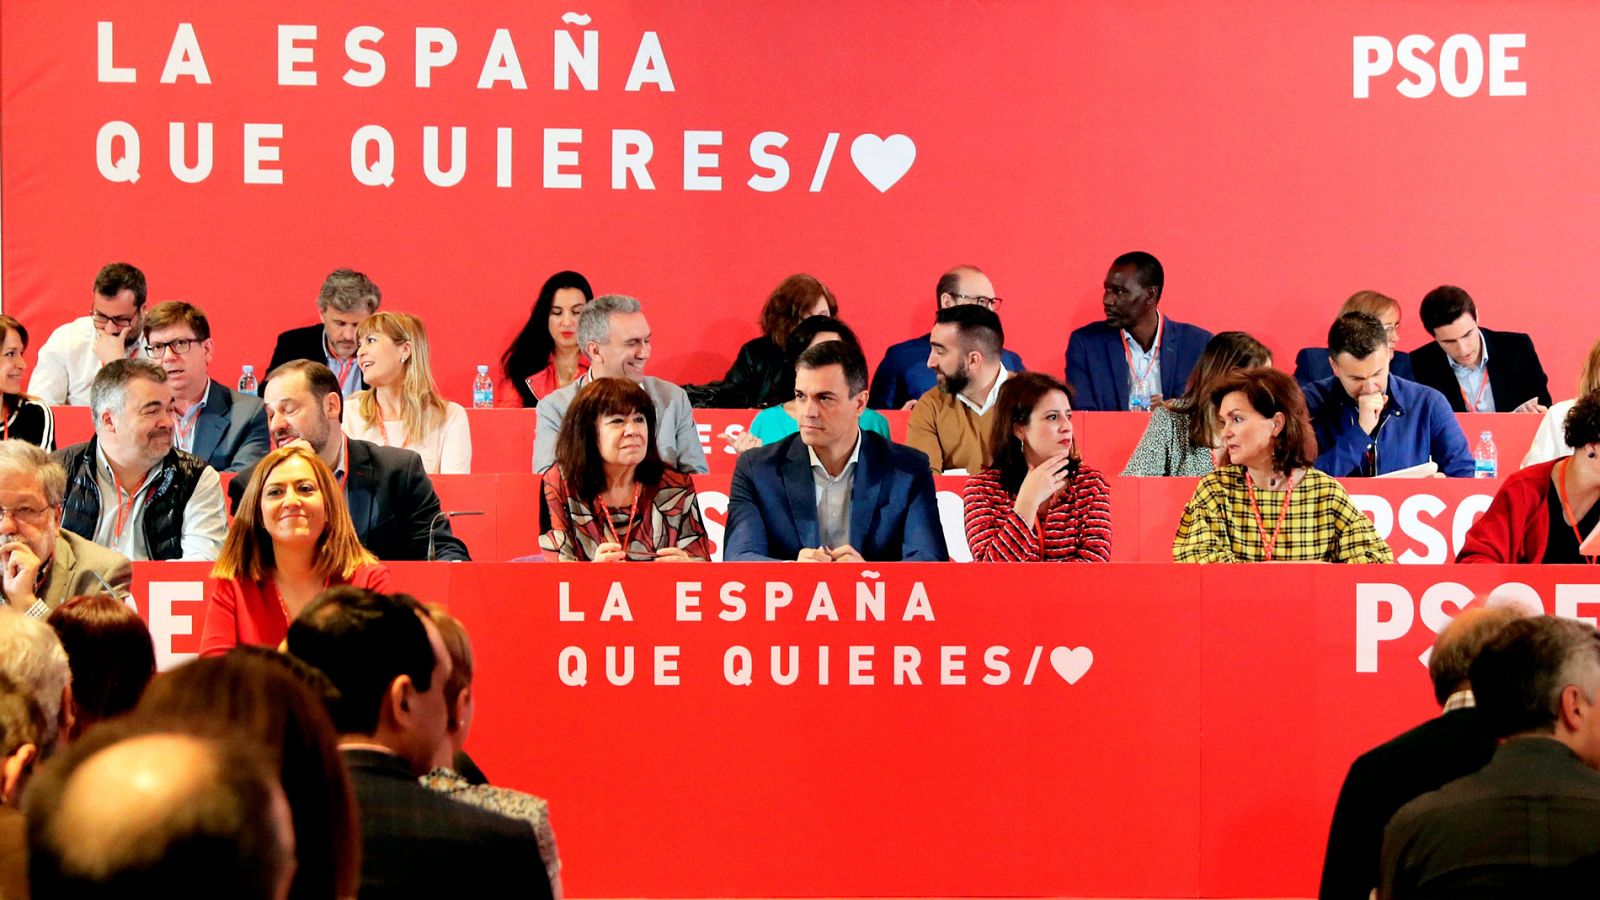 Sánchez castiga a 'susanistas' como Pradas en las listas electorales - Ver ahora